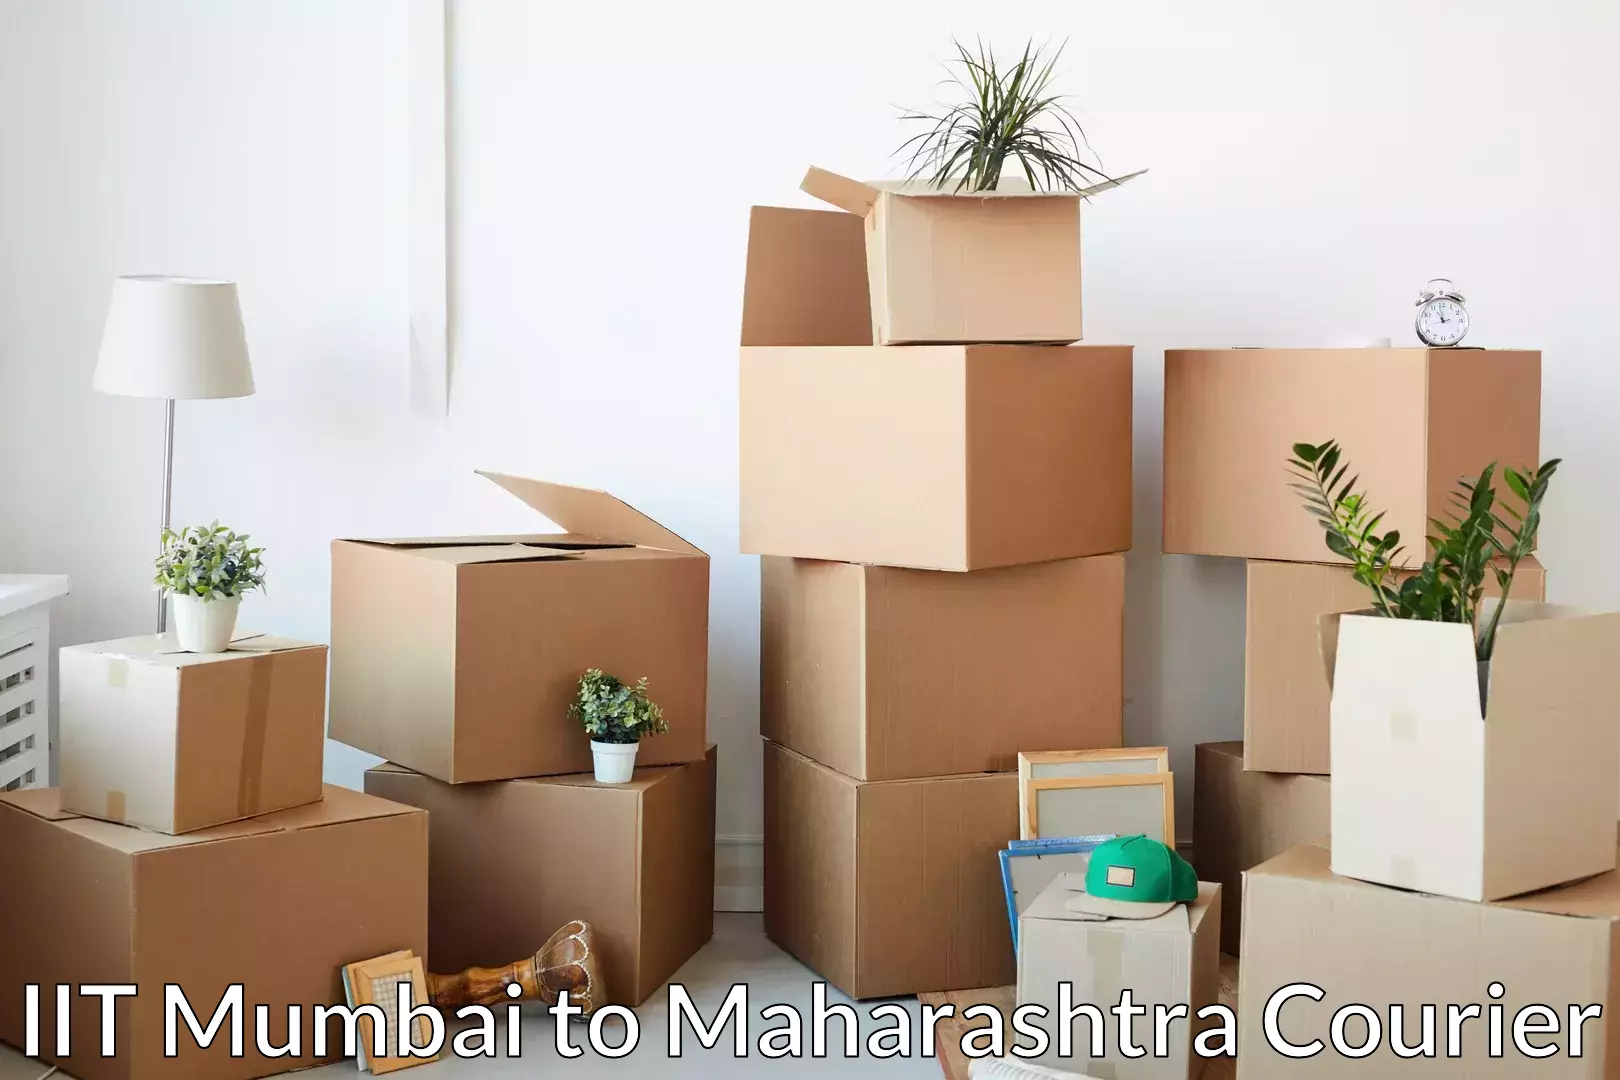 Quality moving company IIT Mumbai to Bhiwandi